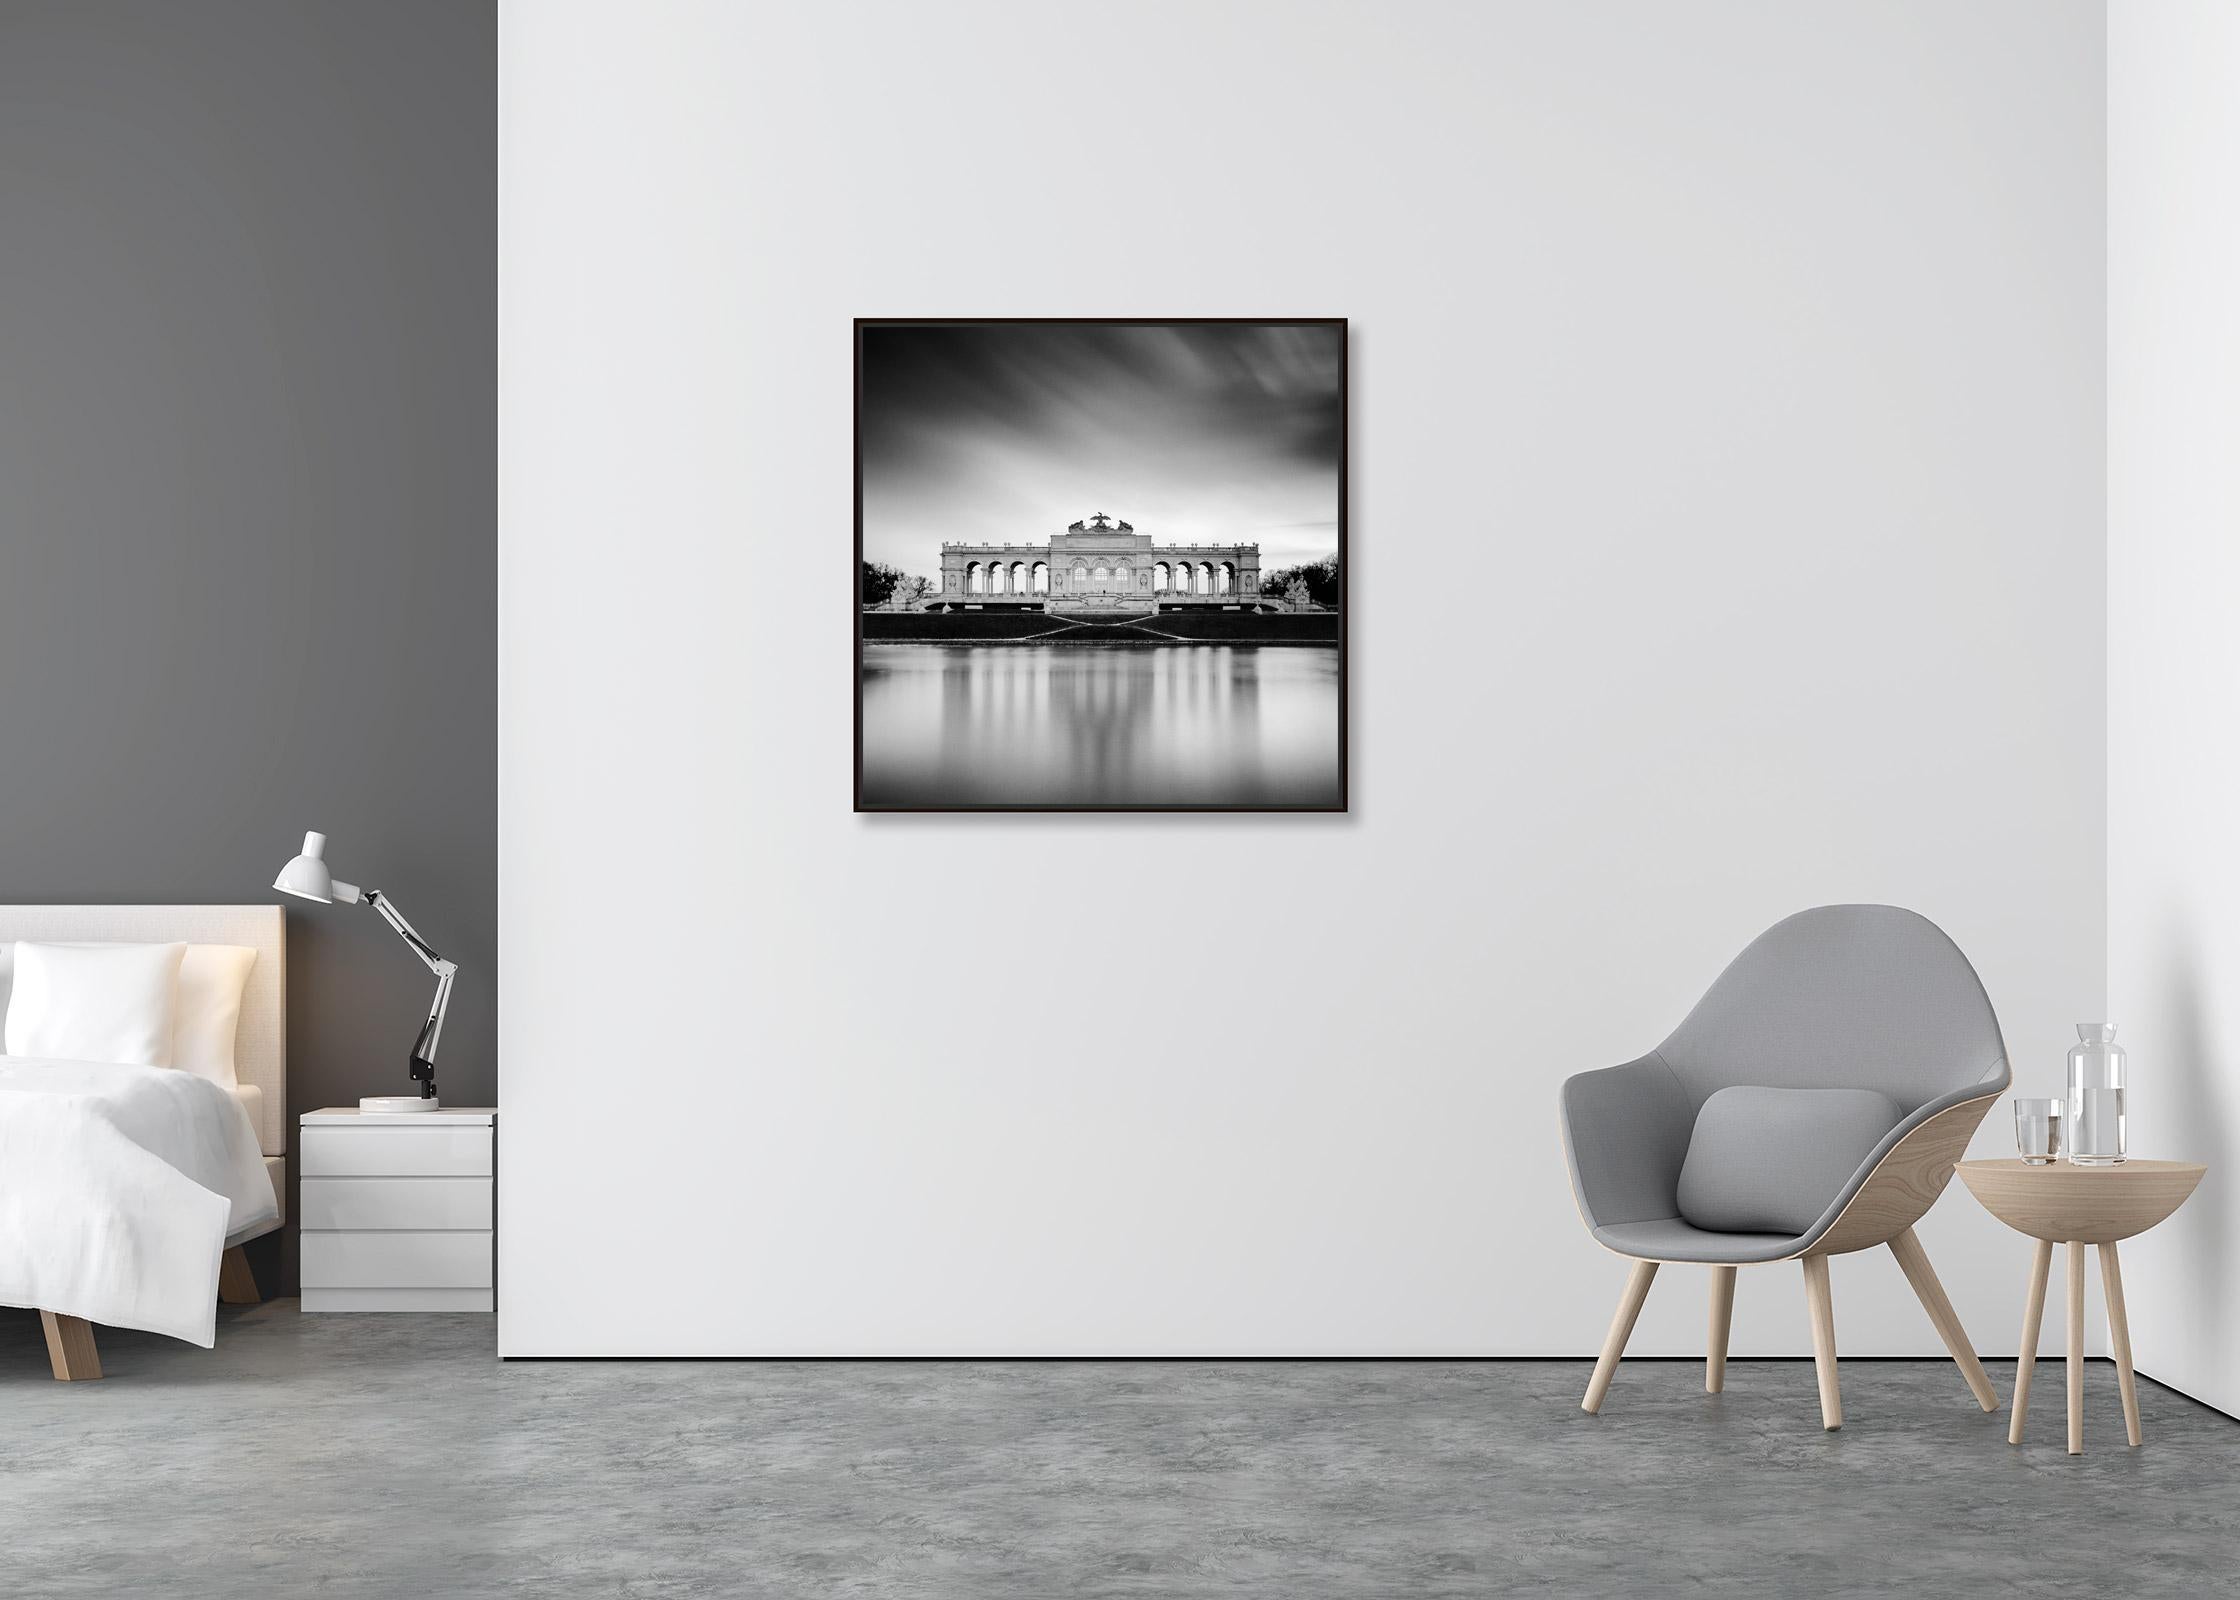 Gloriette, Schloss Schoenbrunn, Vienna, black and white photography, landscape - Jugendstil Photograph by Gerald Berghammer